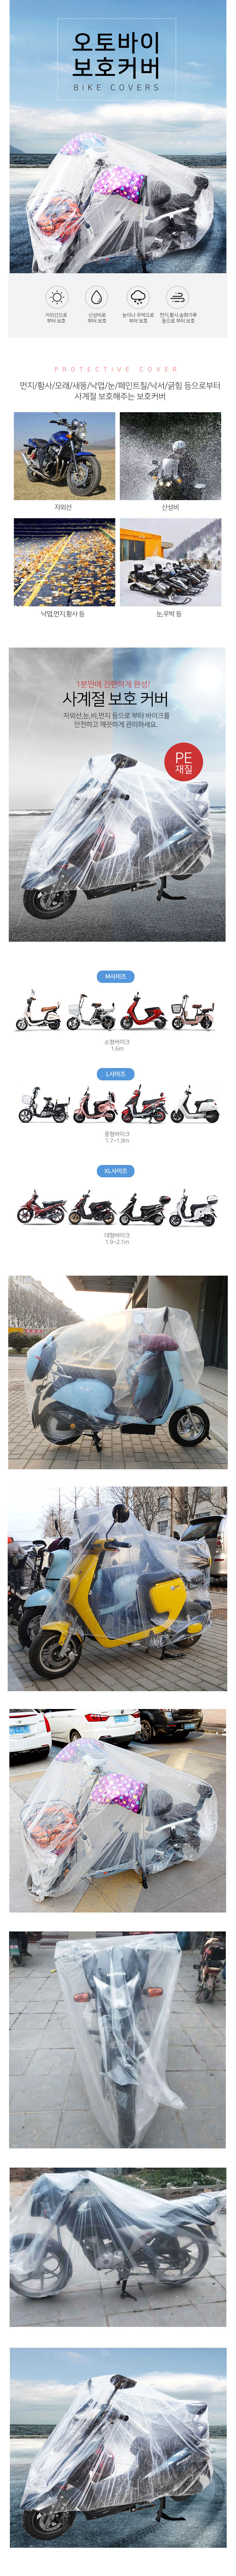 bike-cover.jpg